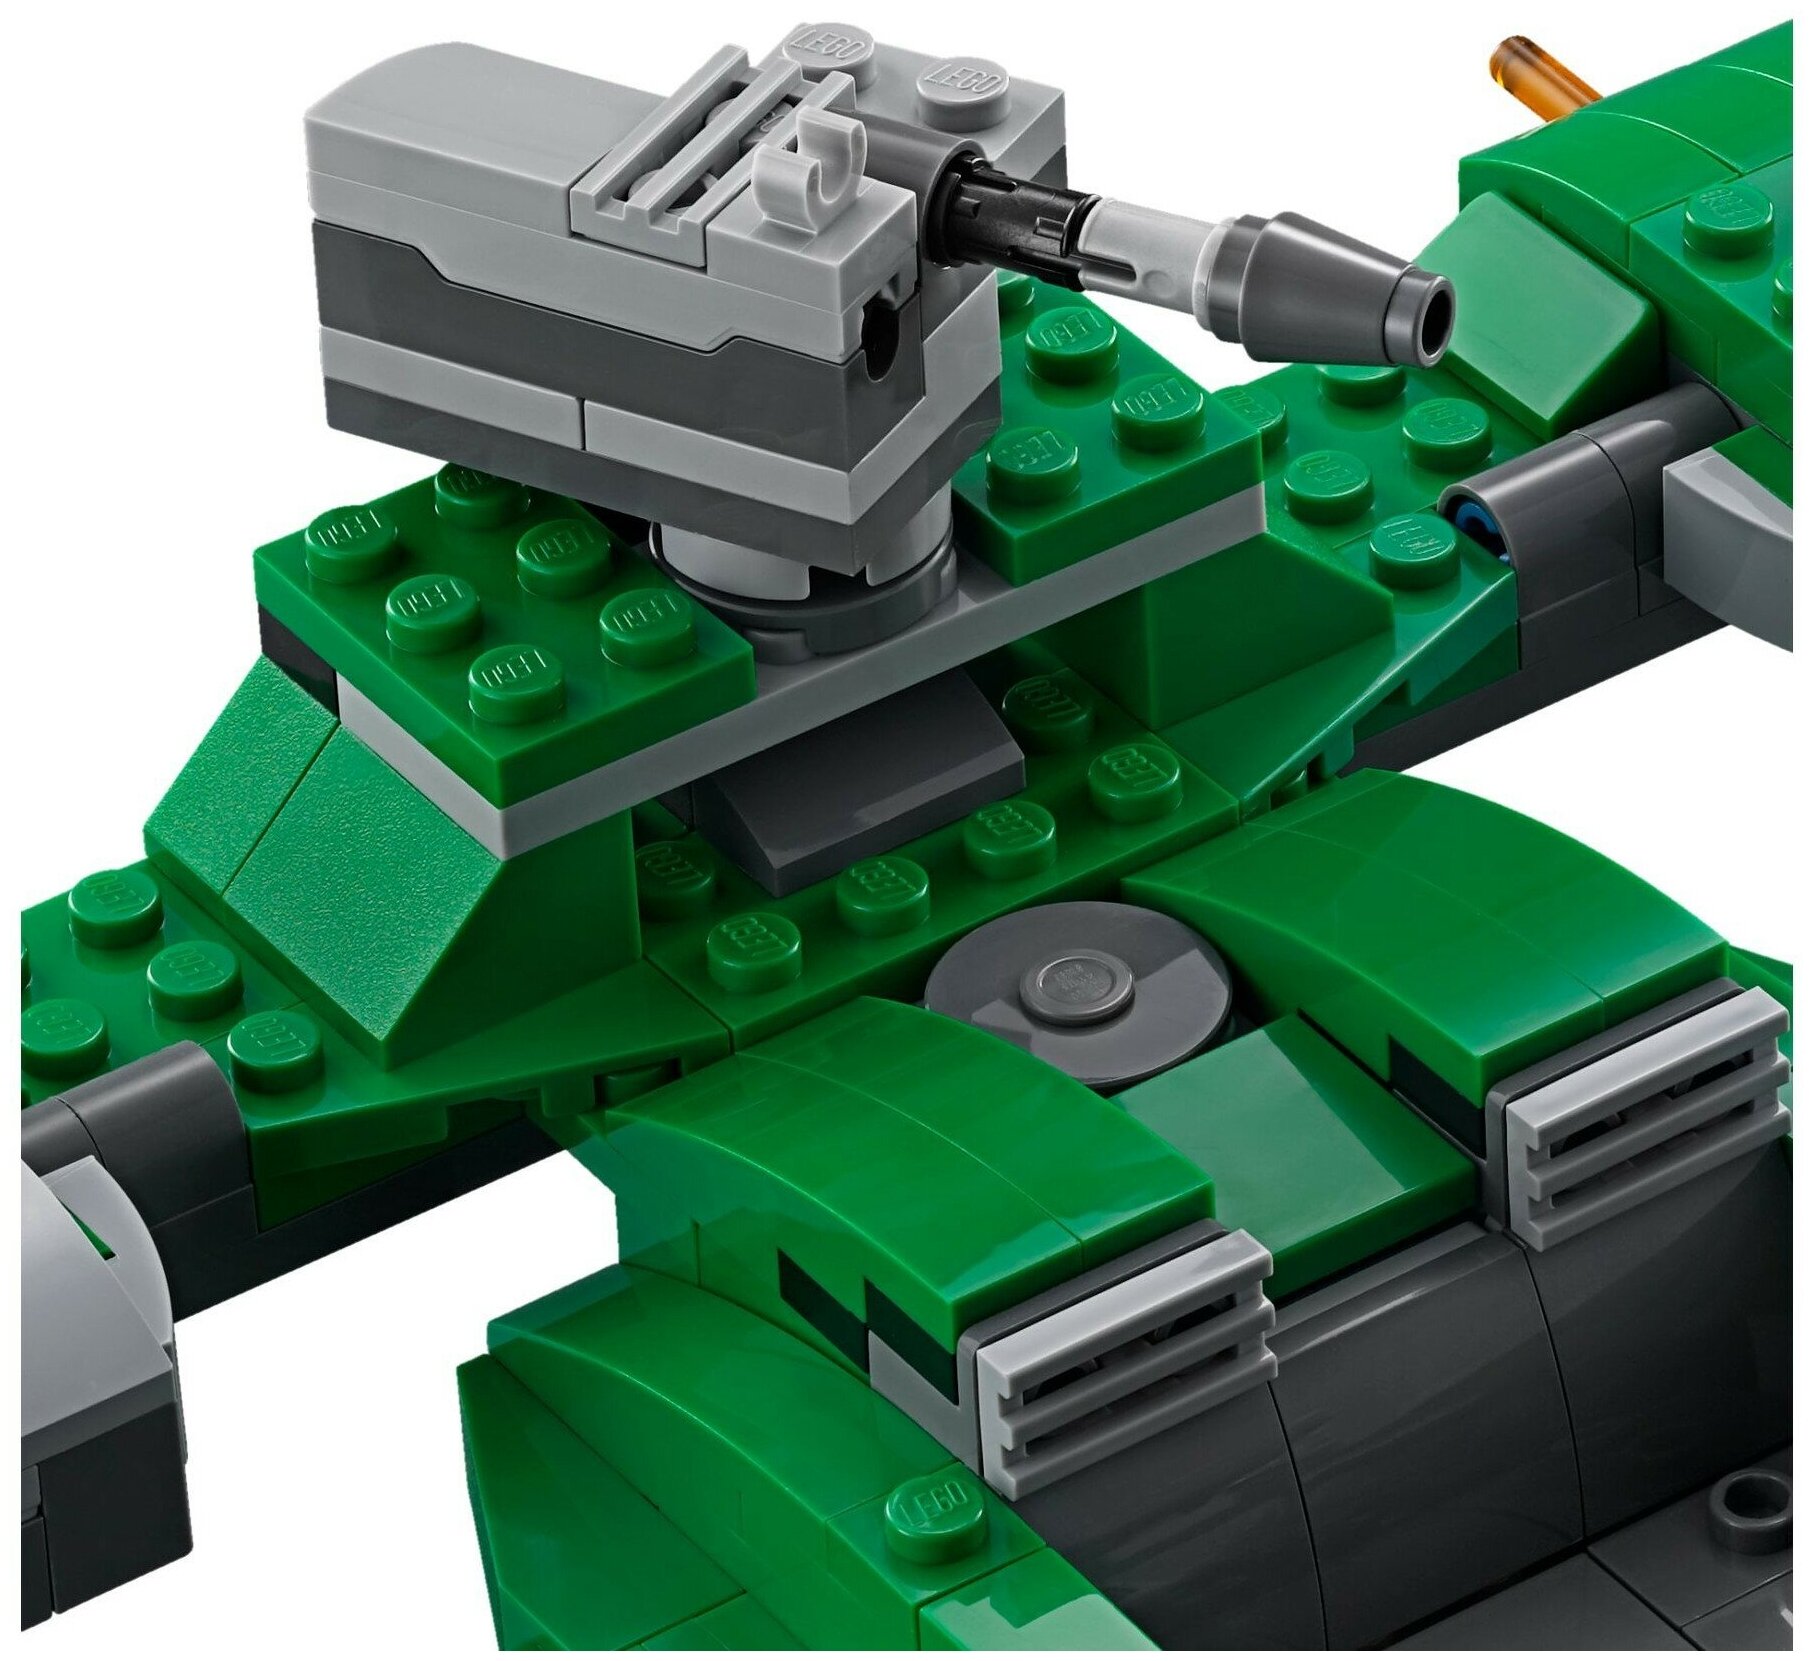 Конструктор LEGO - фото №5